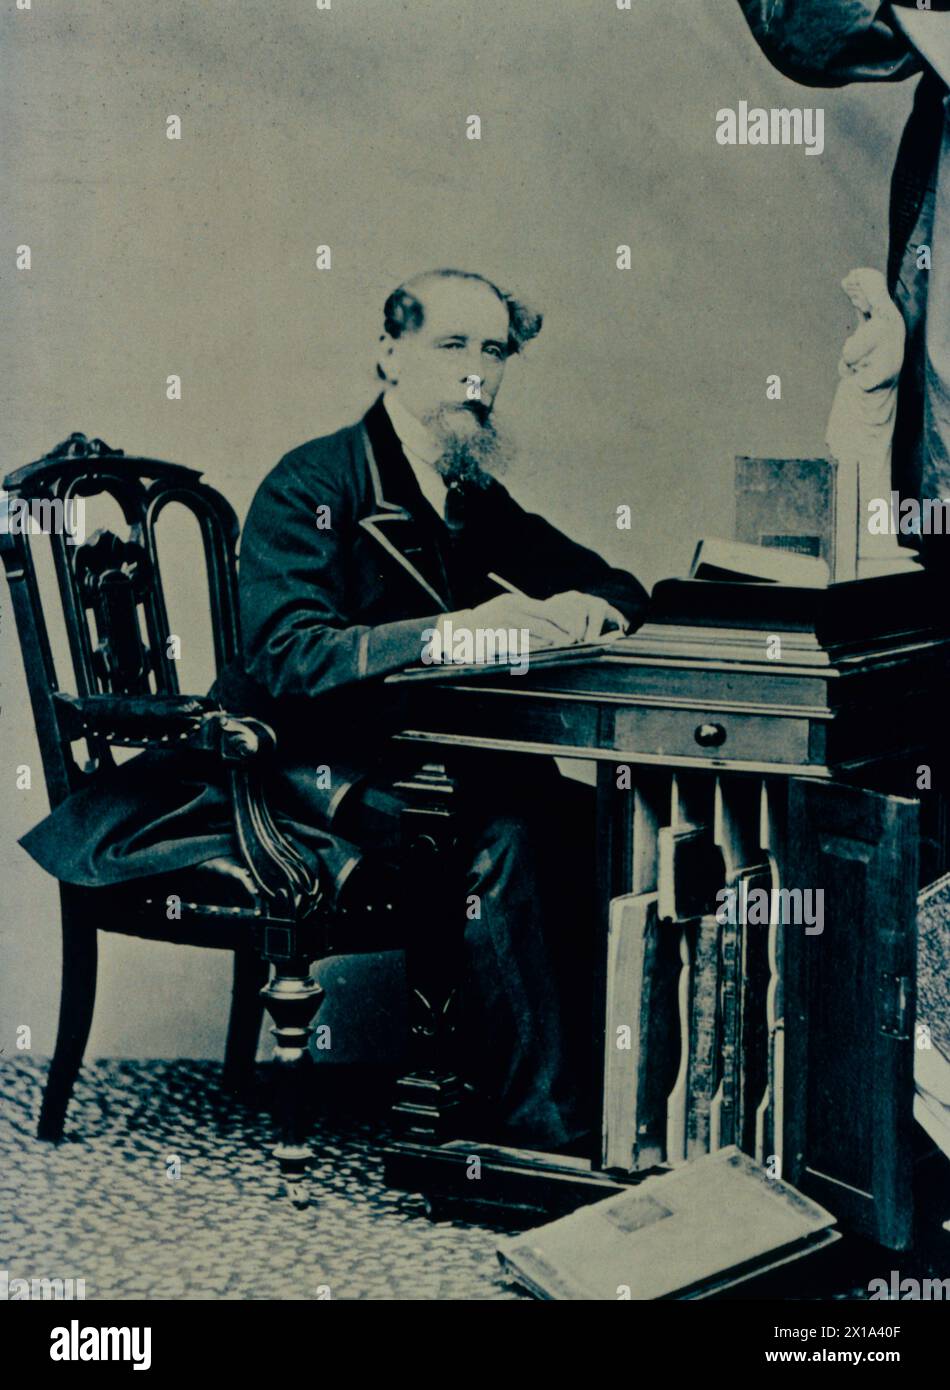 Le romancier anglais Charles Dickens en visite aux États-Unis, 1868 Banque D'Images